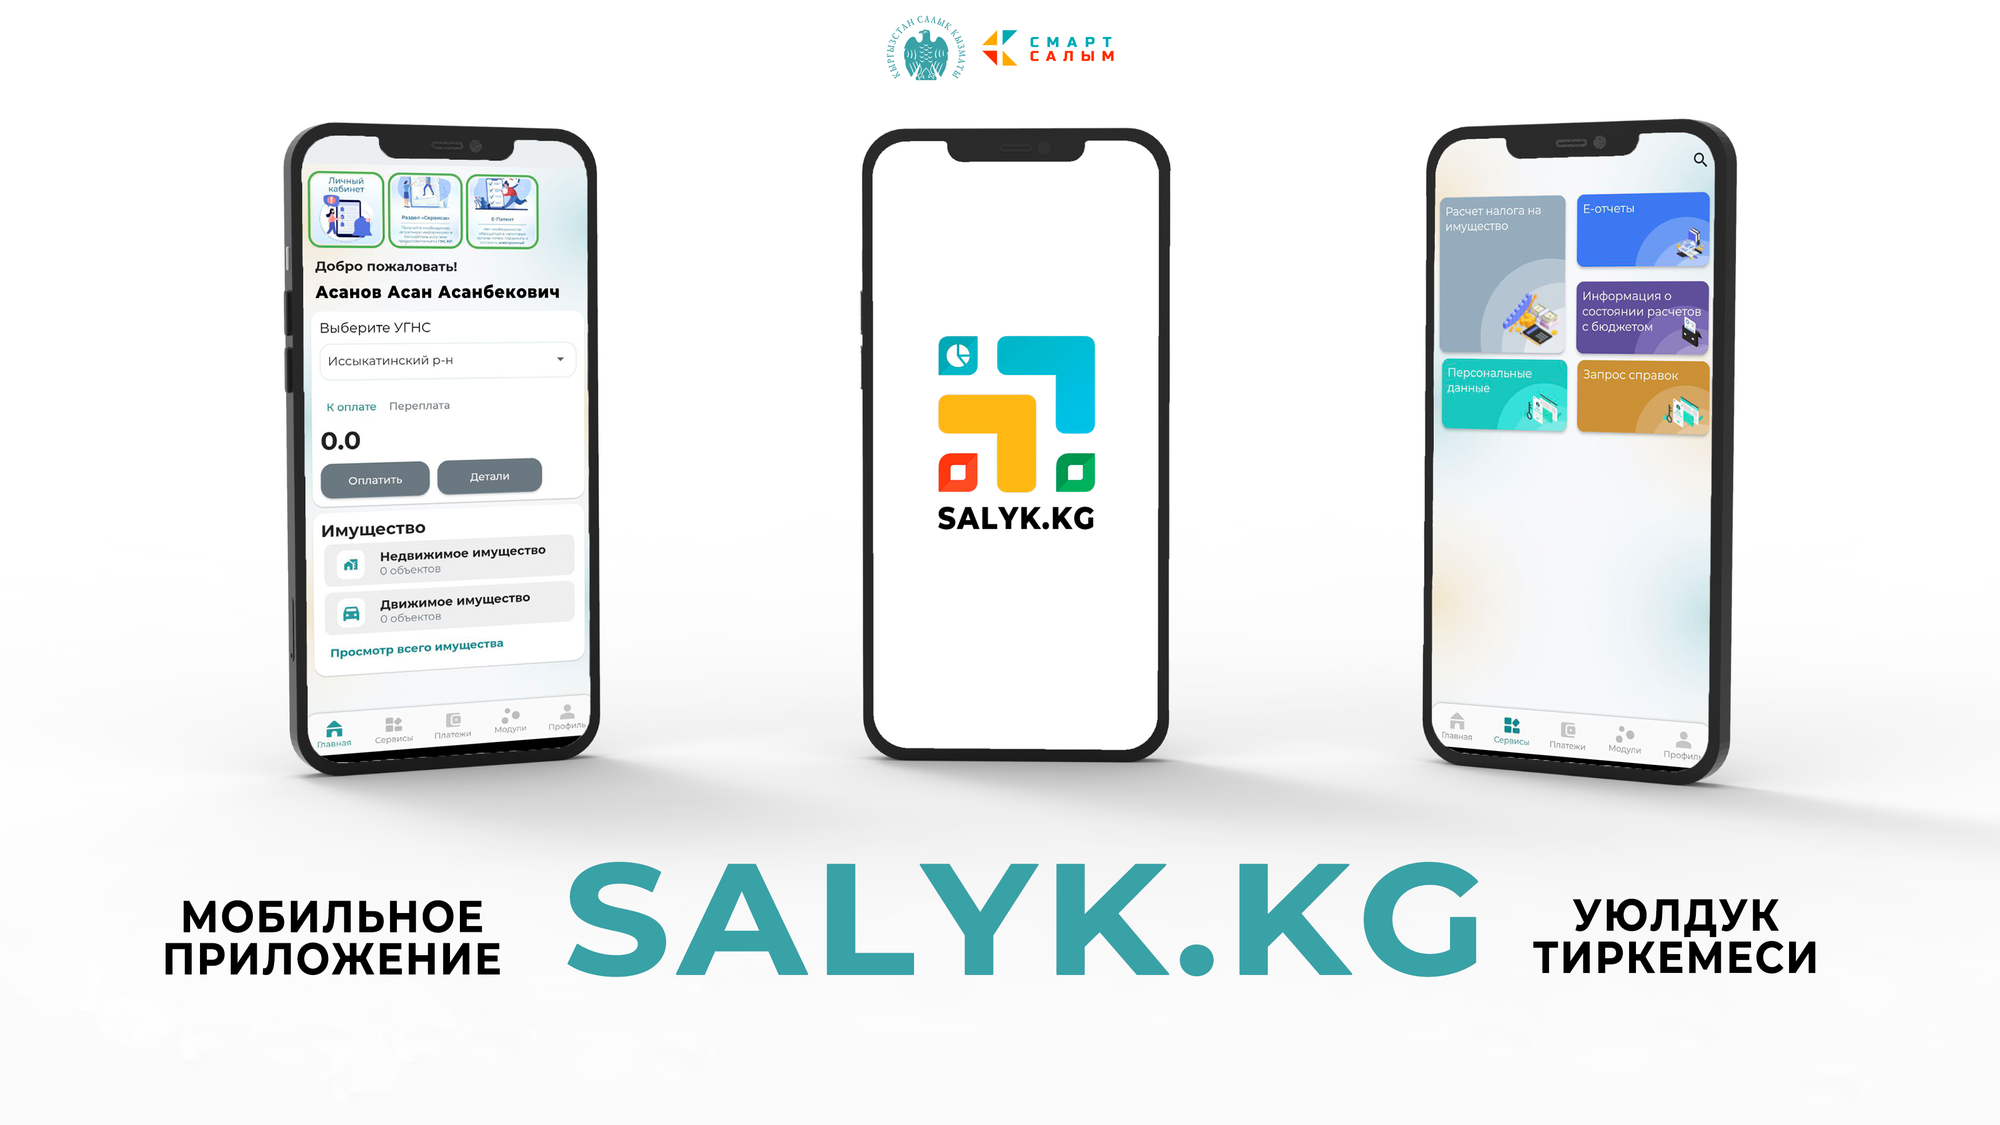 ГНС запустила мобильное приложение Salyk.kg – пока оно доступно только для пользователей Android